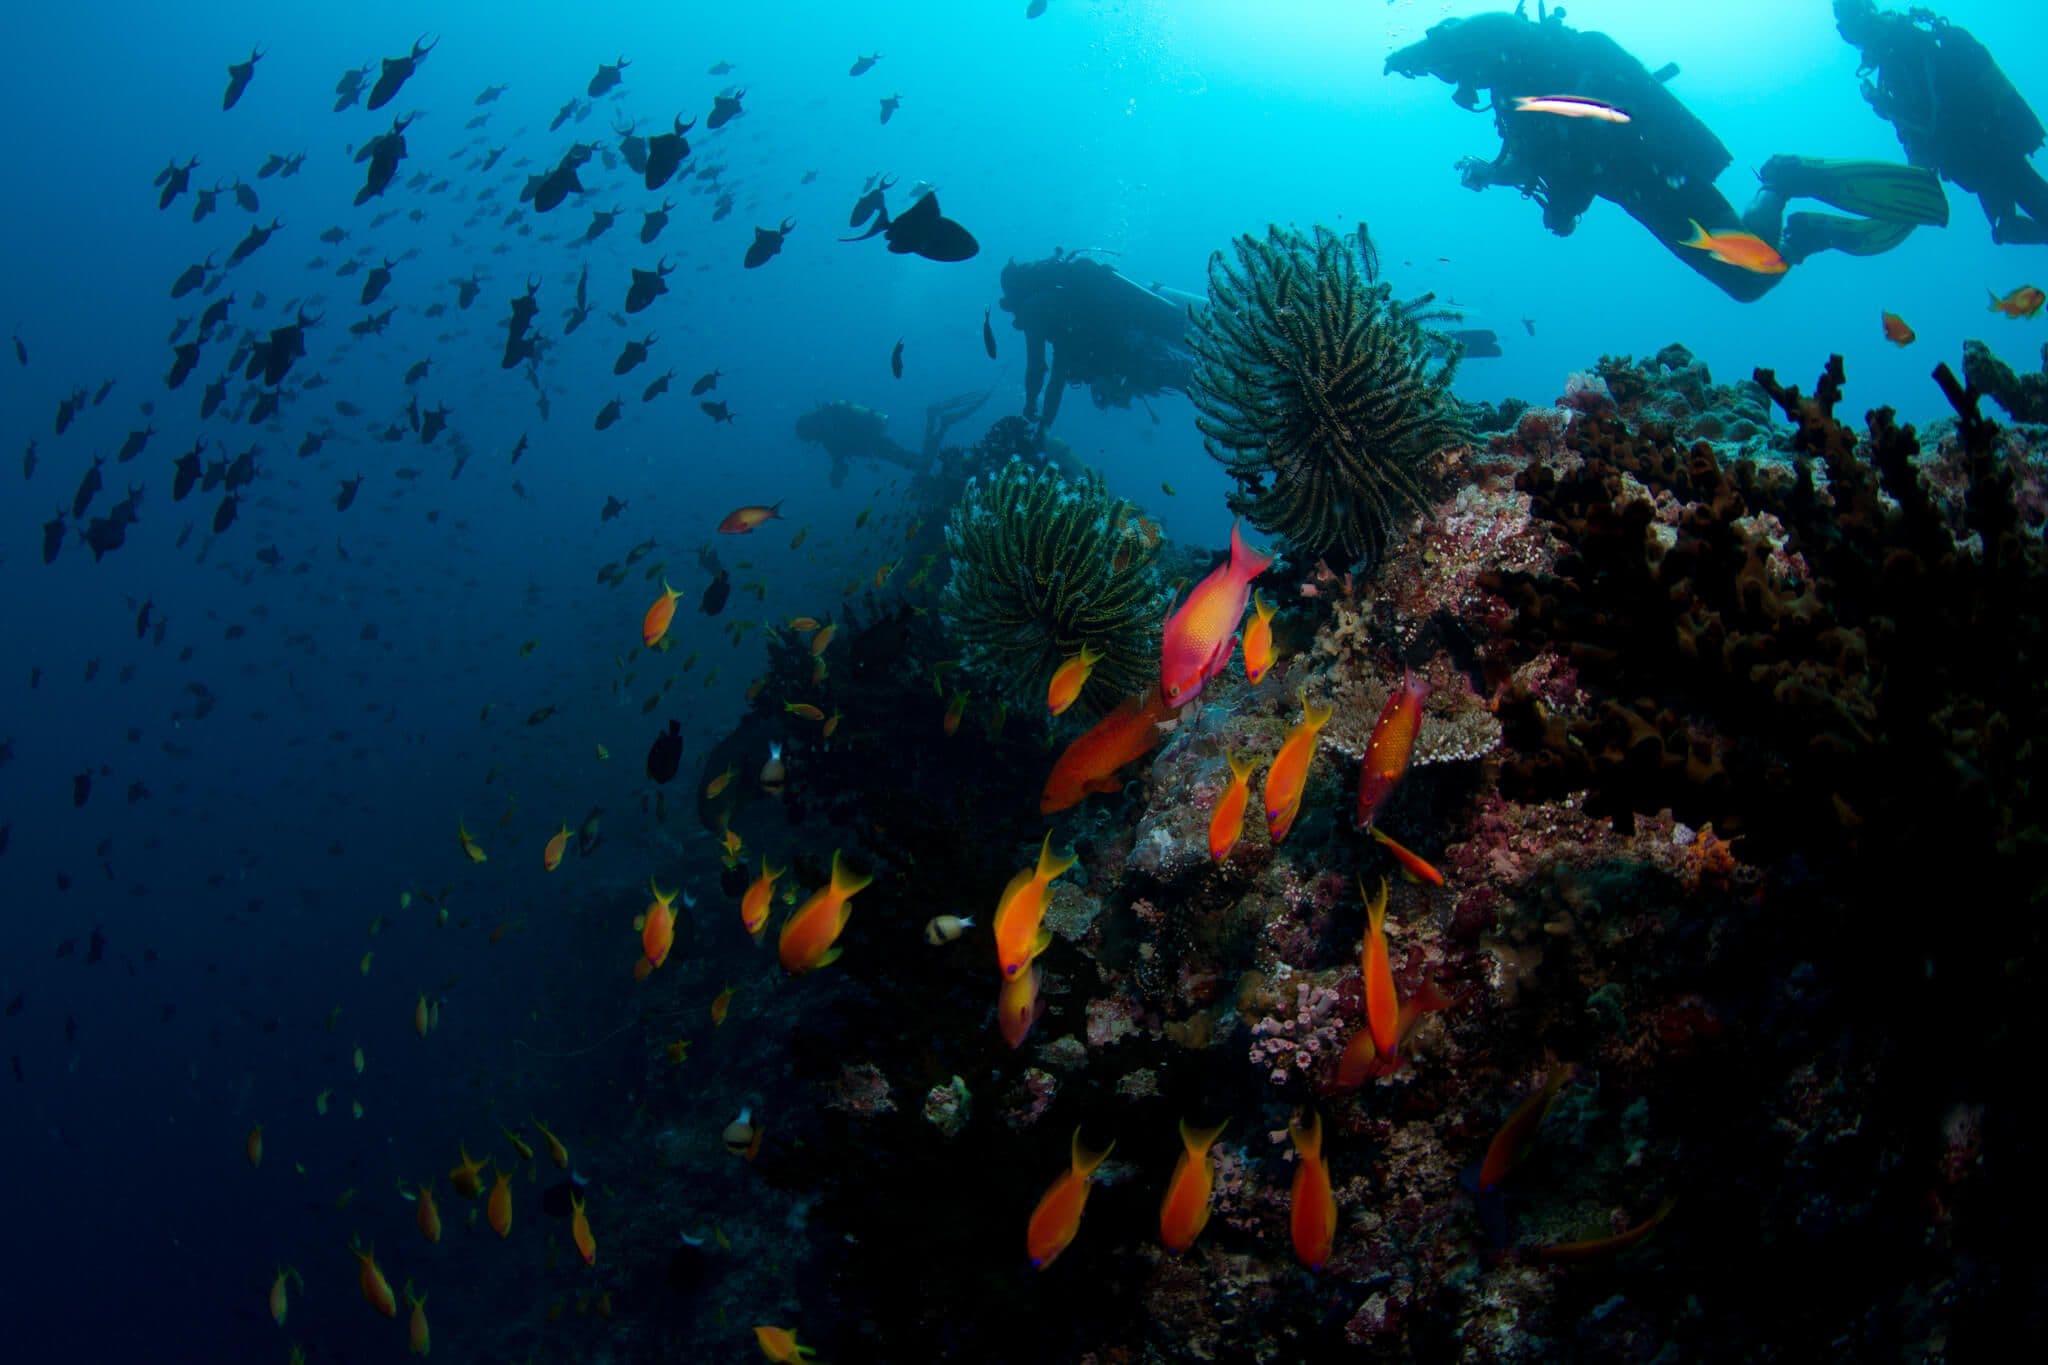 So viele bunte Fische schwimmen im blauen Meer Trincomalee Sri Lanka